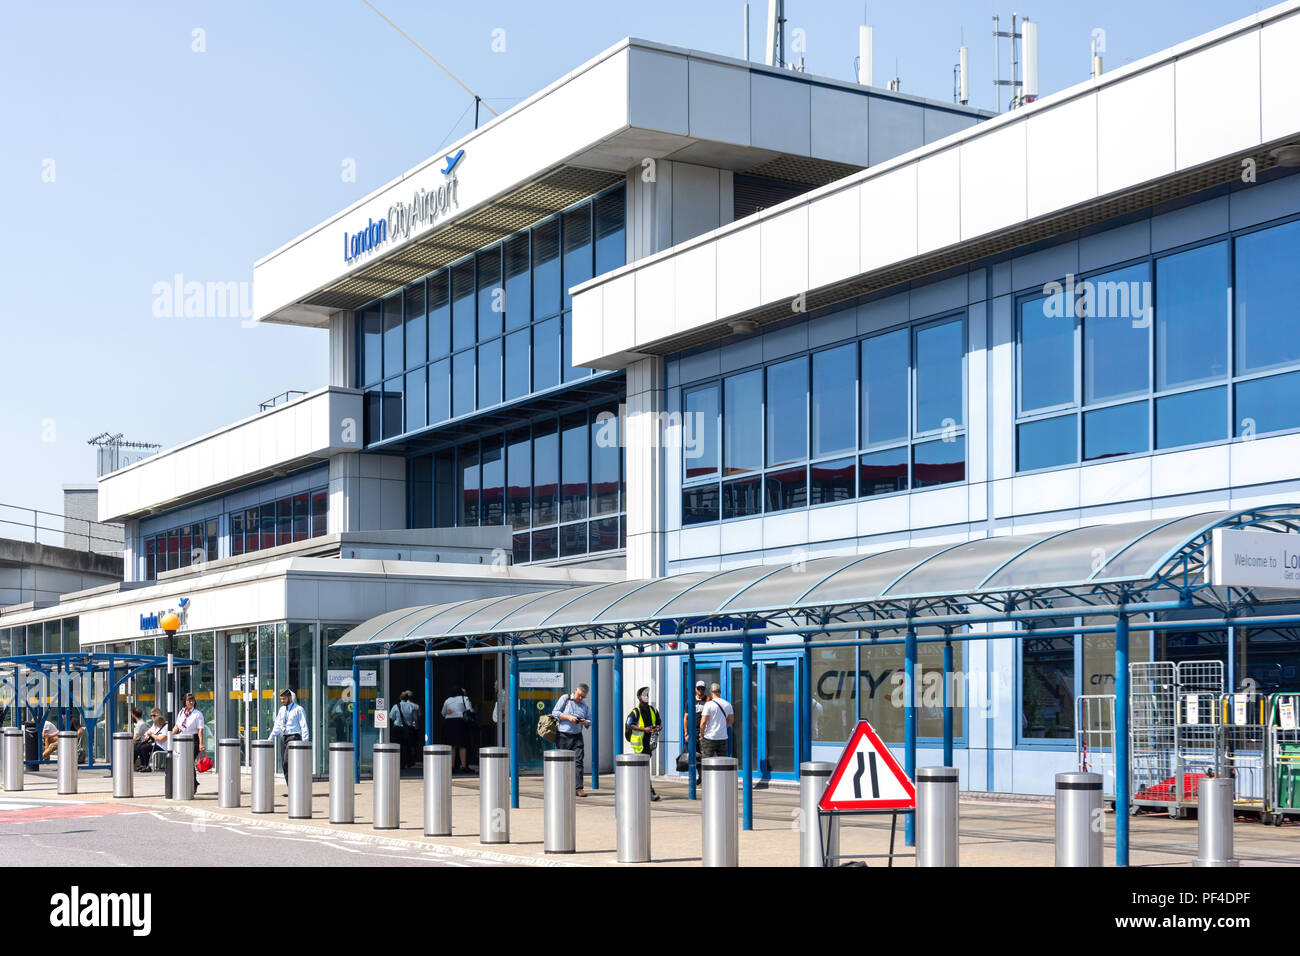 Entrée principale, l'aéroport de London City, Silvertown, London, Greater London, Angleterre, Royaume-Uni Banque D'Images